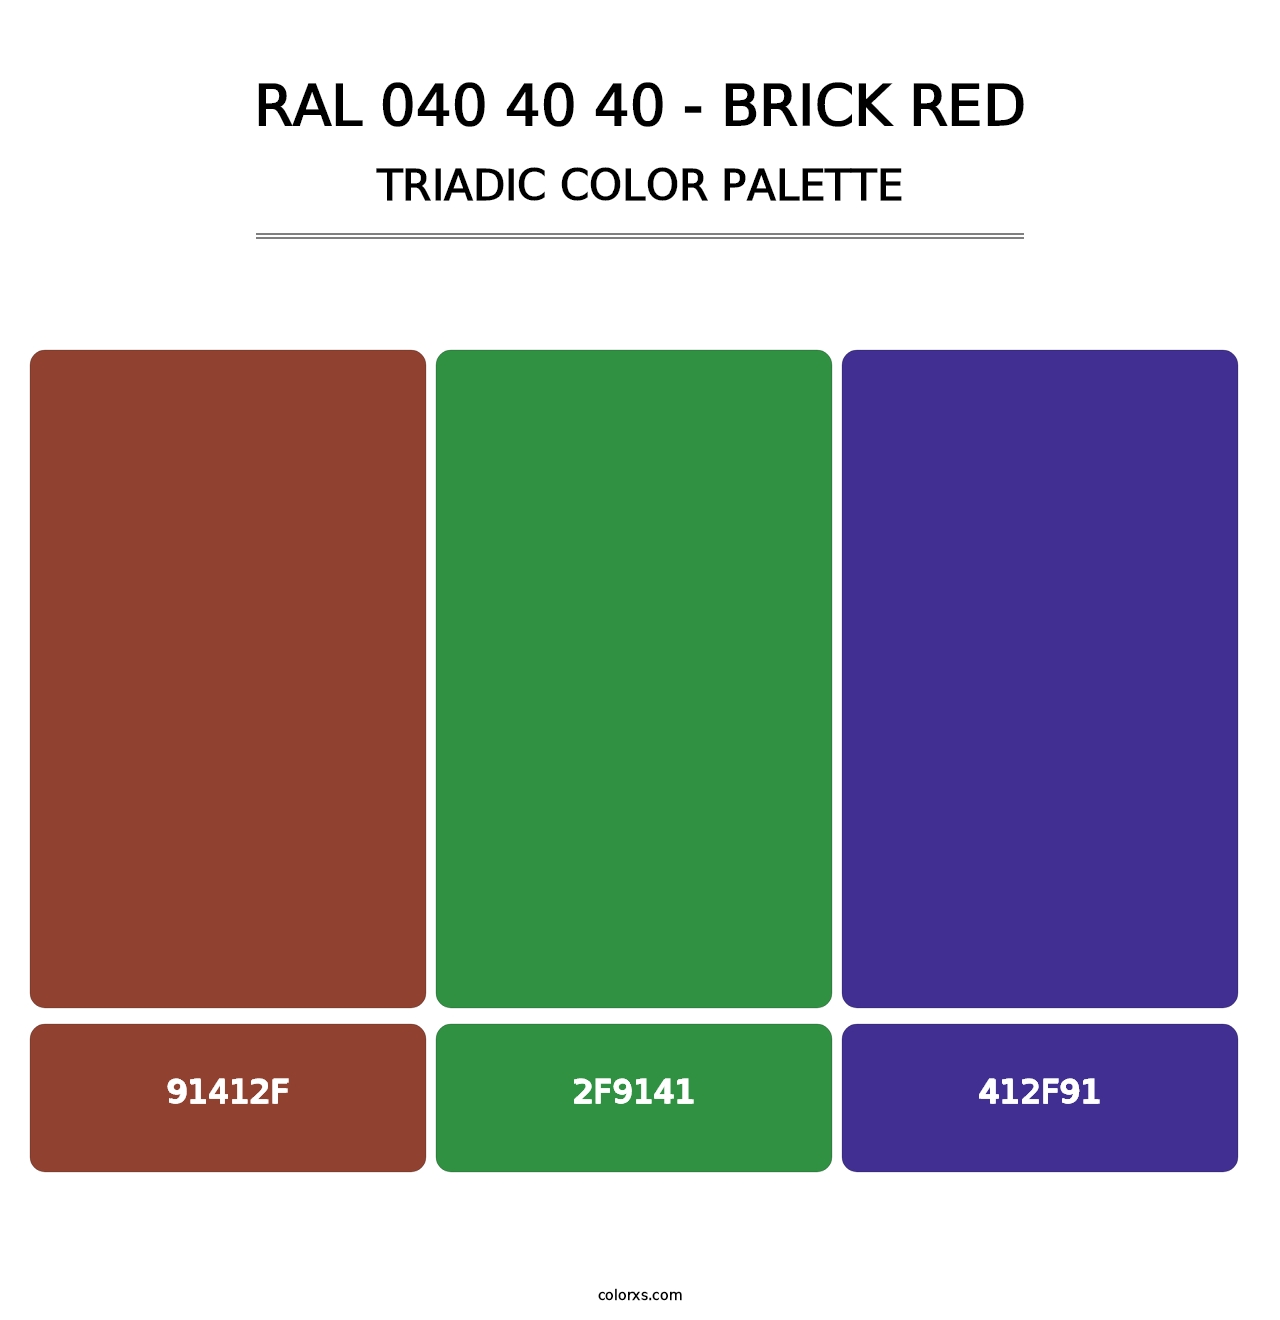 RAL 040 40 40 - Brick Red - Triadic Color Palette